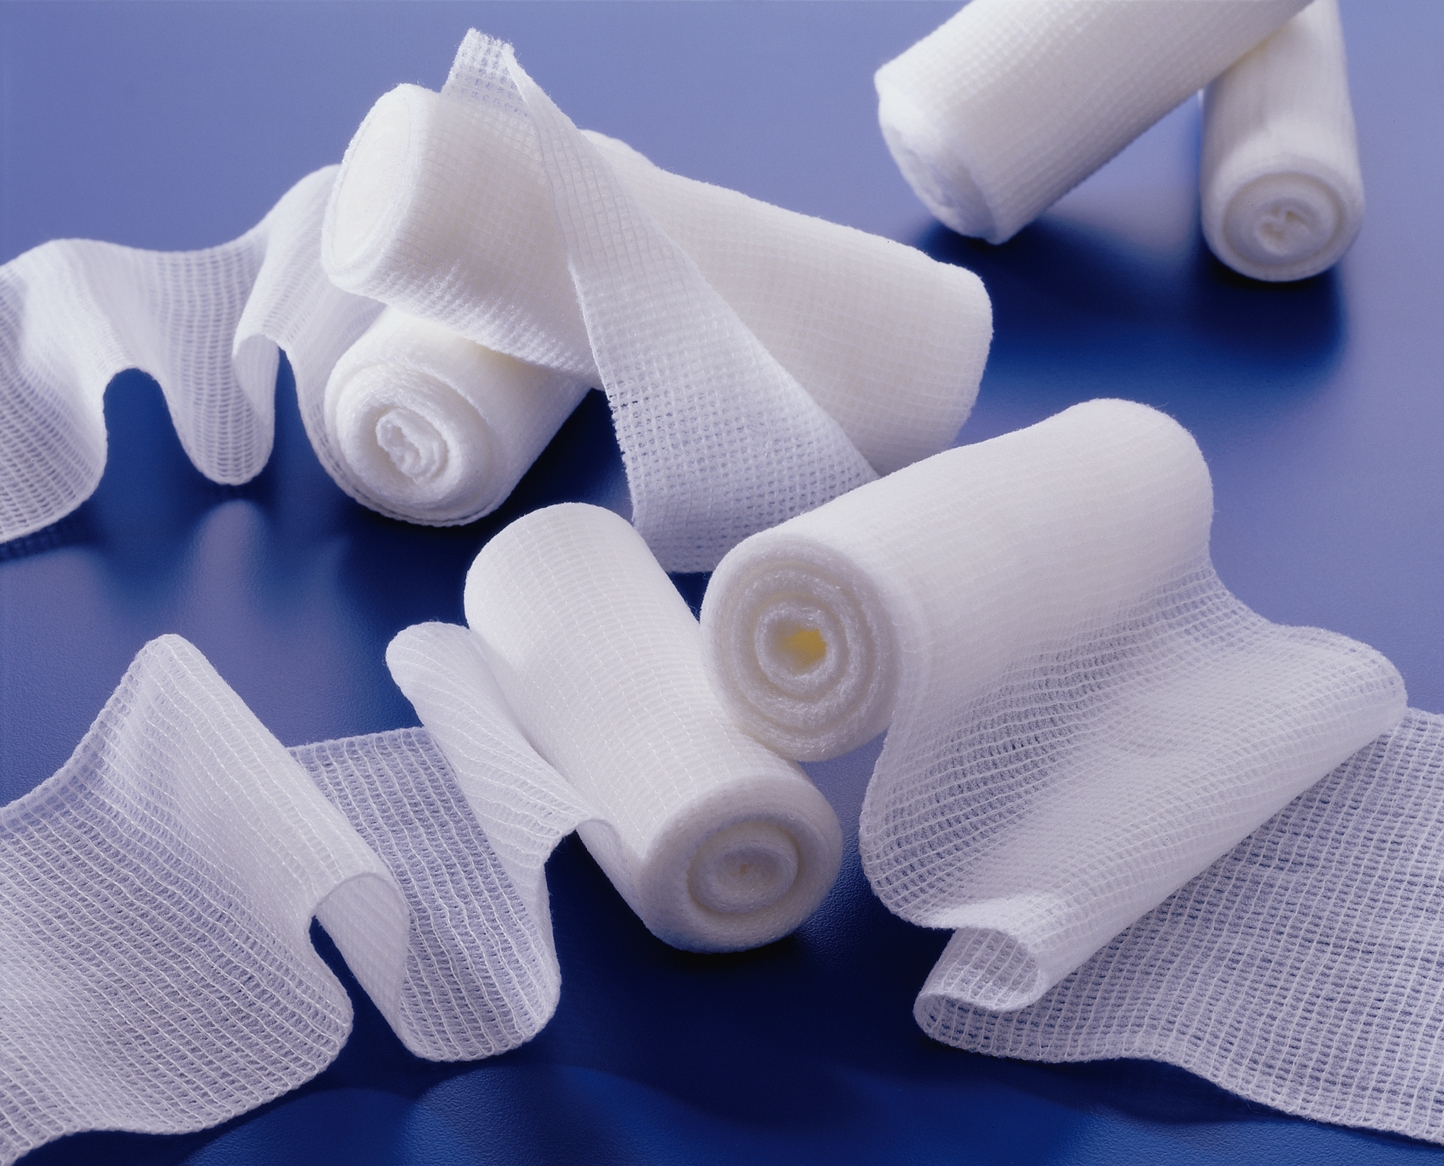 Медицинская марля является основой для изготовления бинтов, стерильных повязок и средств индивидуальной защиты.